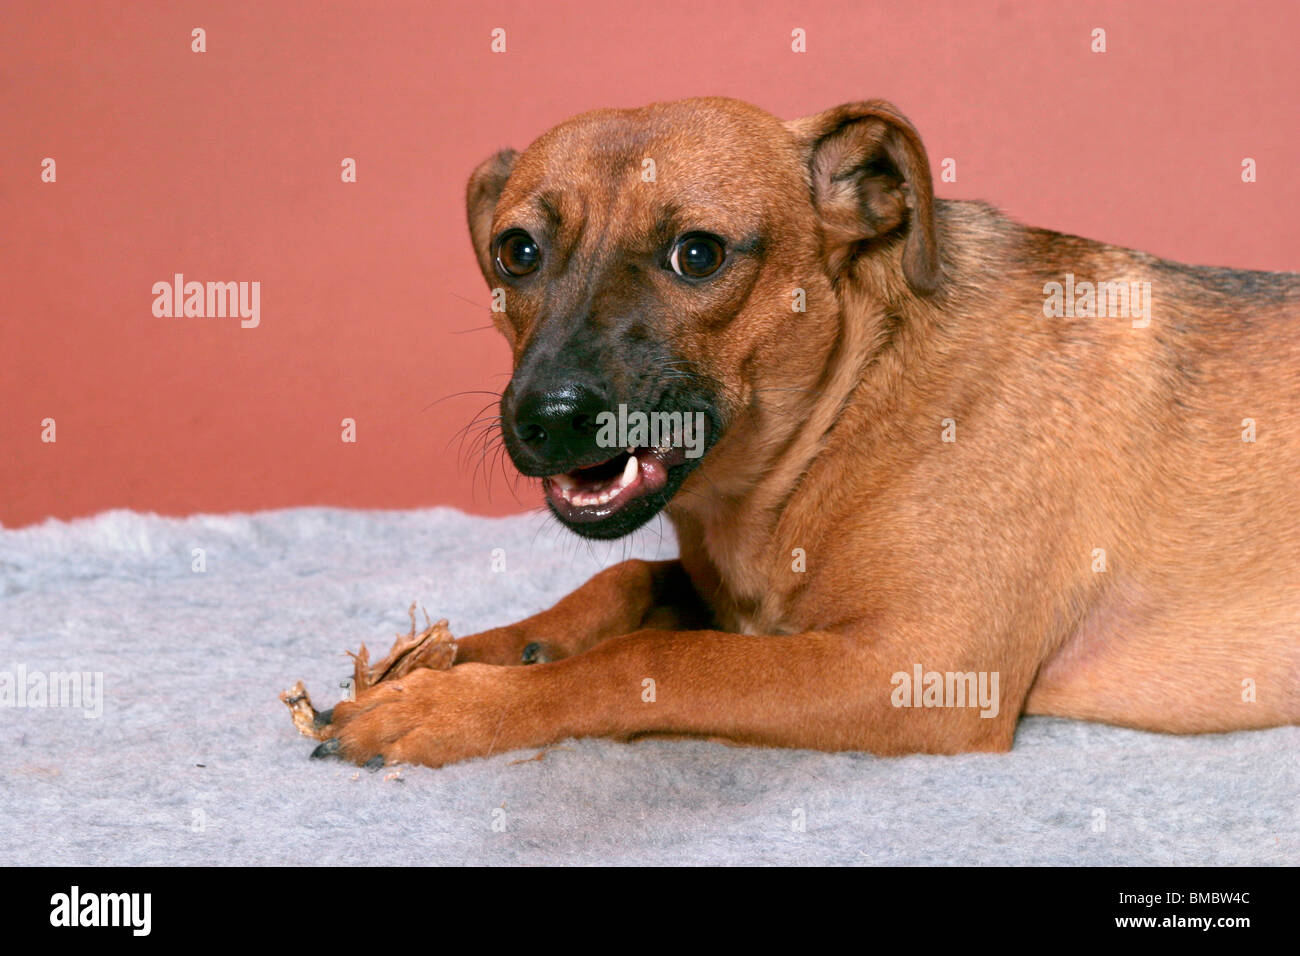 fressender Hund / eating dog Stock Photo